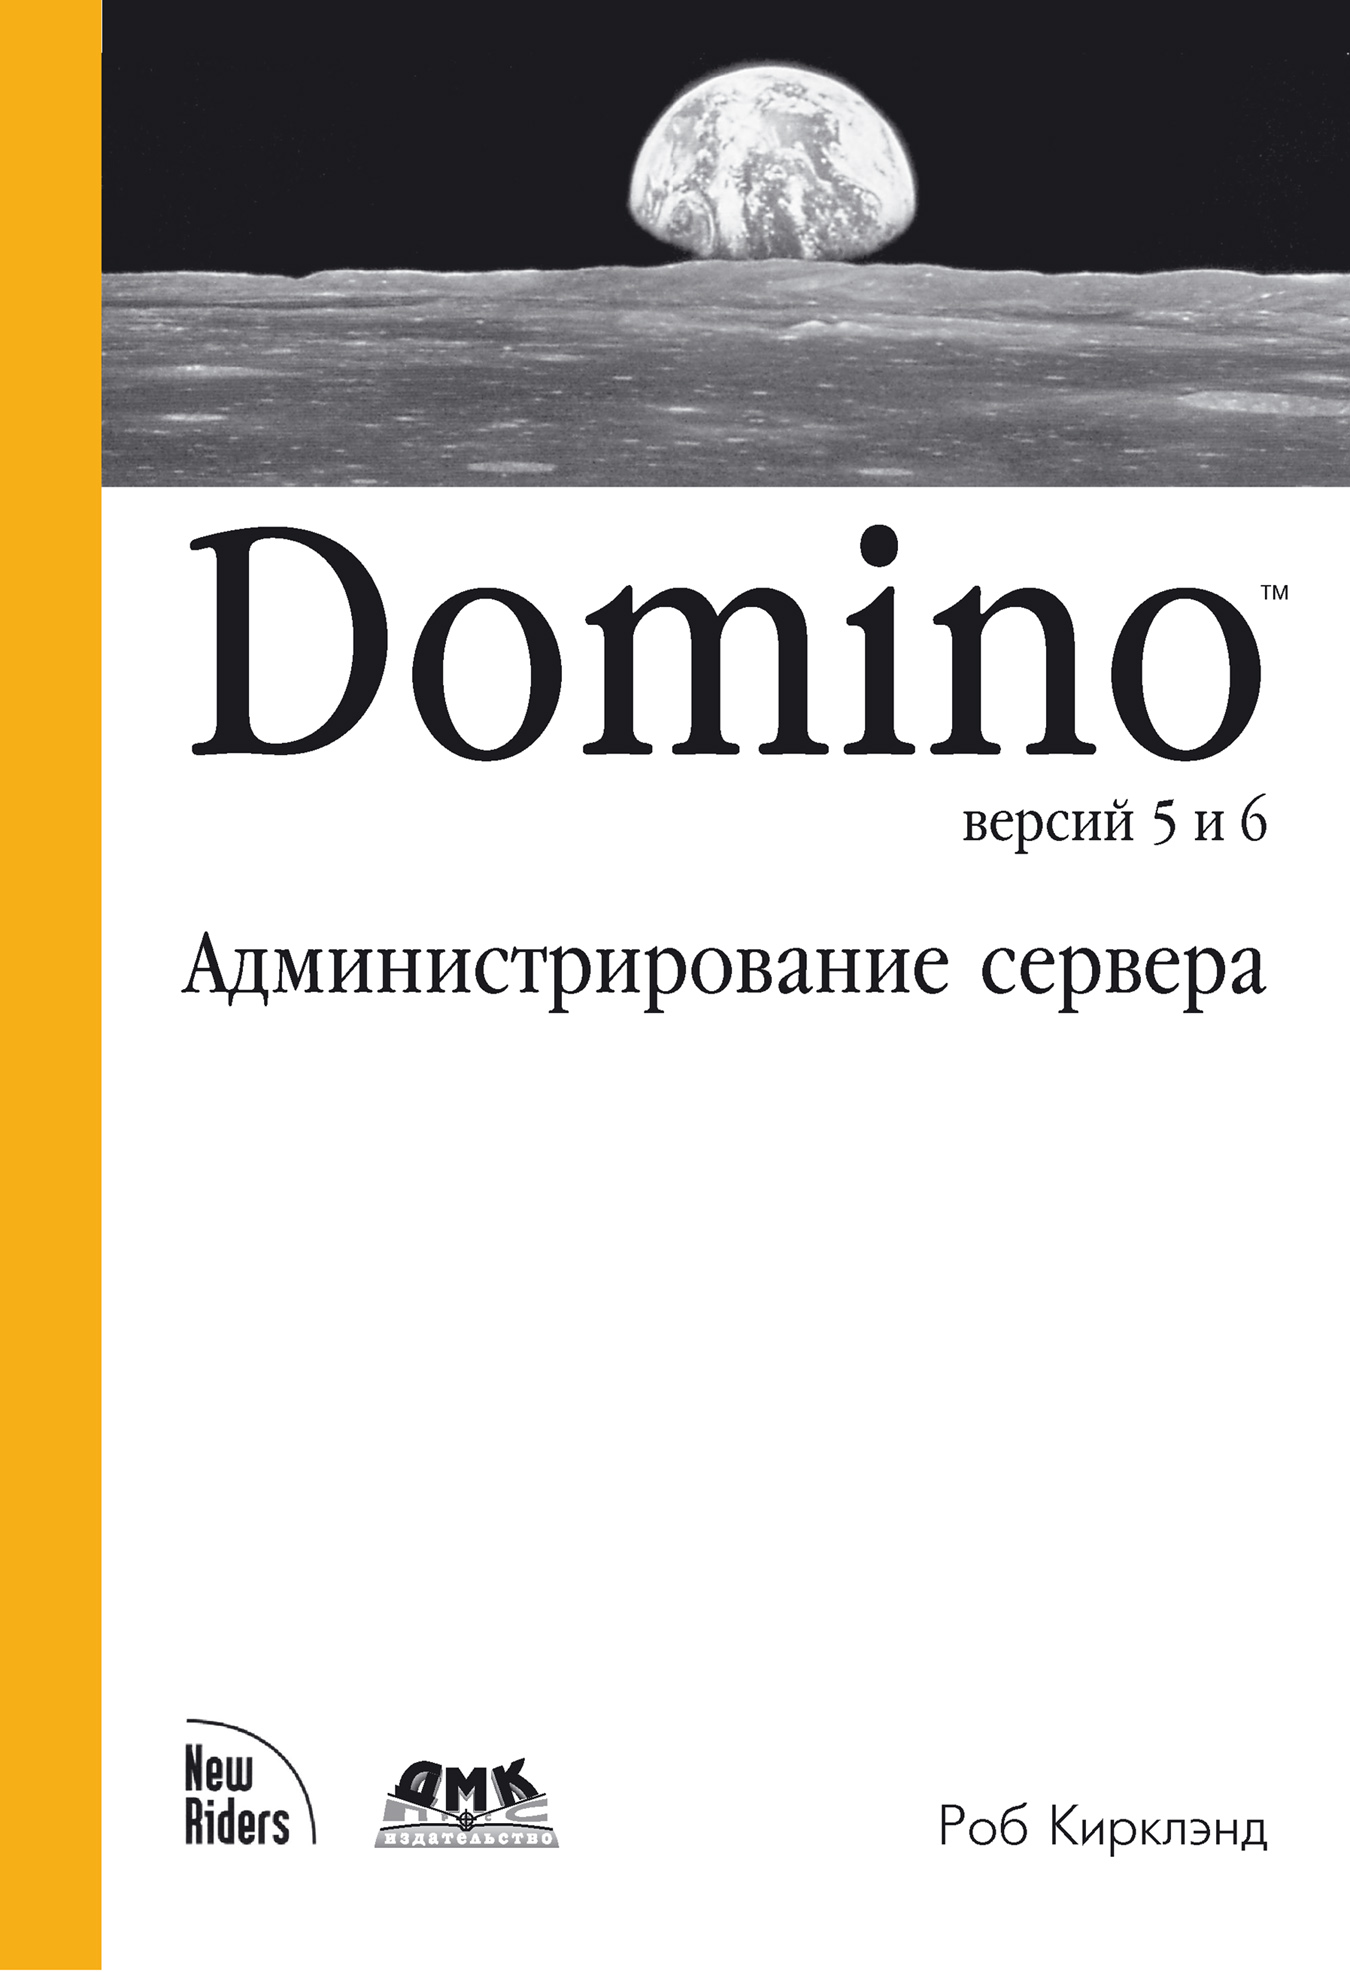 Книга  Domino версий 5 и 6. Администрирование сервера созданная Роб Кирклэнд, А. В. Хаванов может относится к жанру зарубежная компьютерная литература, ОС и сети, программы. Стоимость электронной книги Domino версий 5 и 6. Администрирование сервера с идентификатором 434295 составляет 559.00 руб.